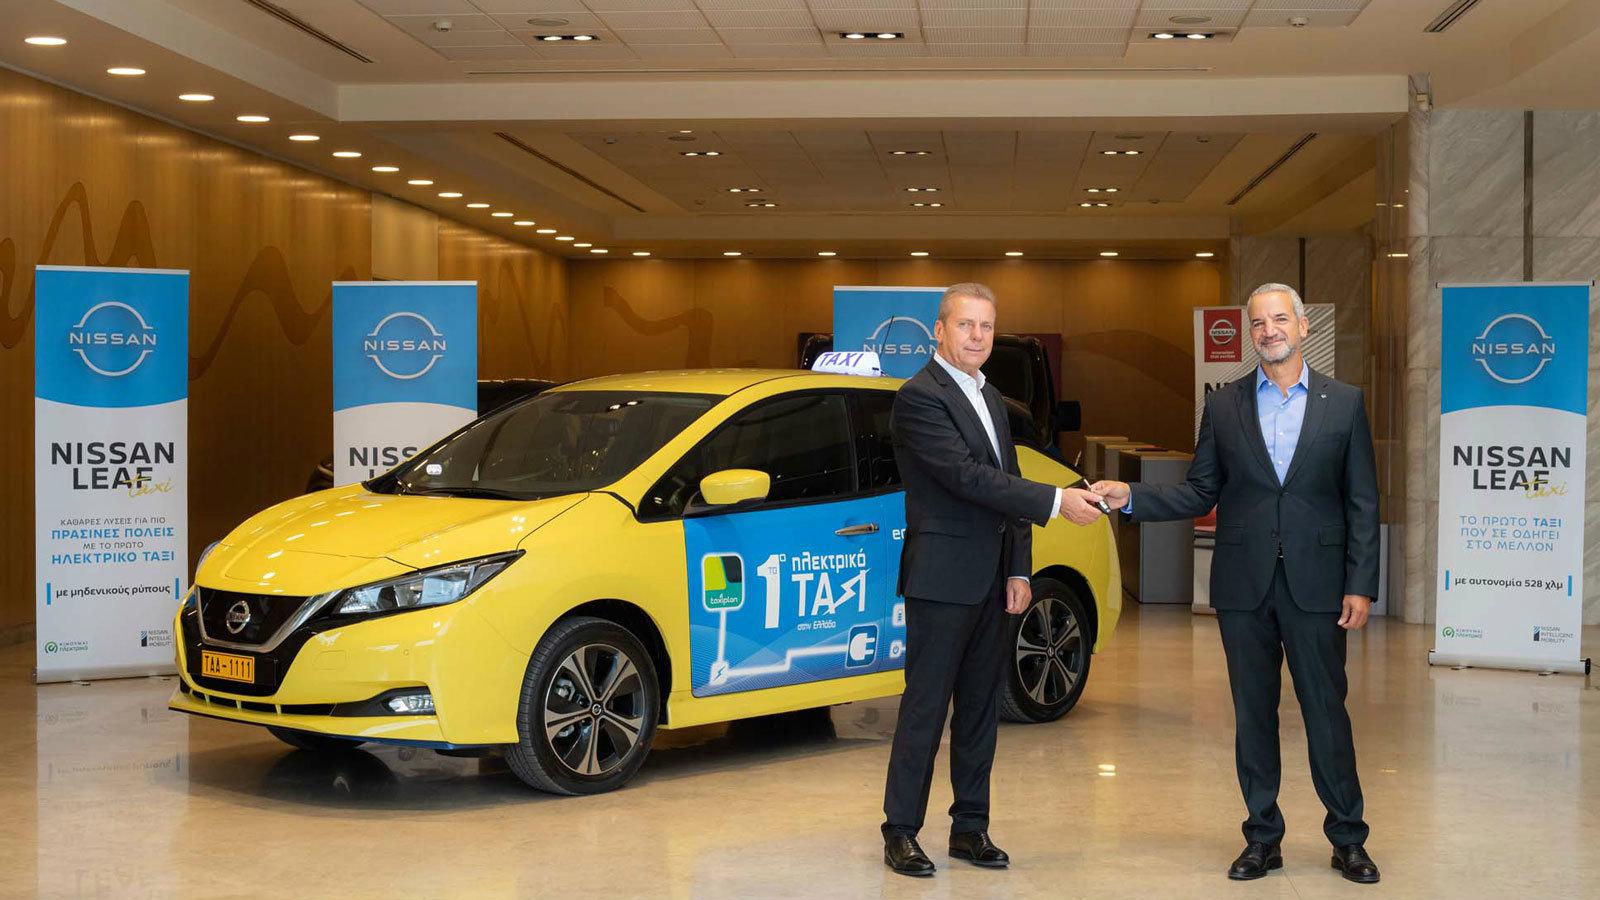 Nissan και Taxiplon: Το πρώτο αμιγώς ηλεκτρικό ταξί στην Ελλάδα